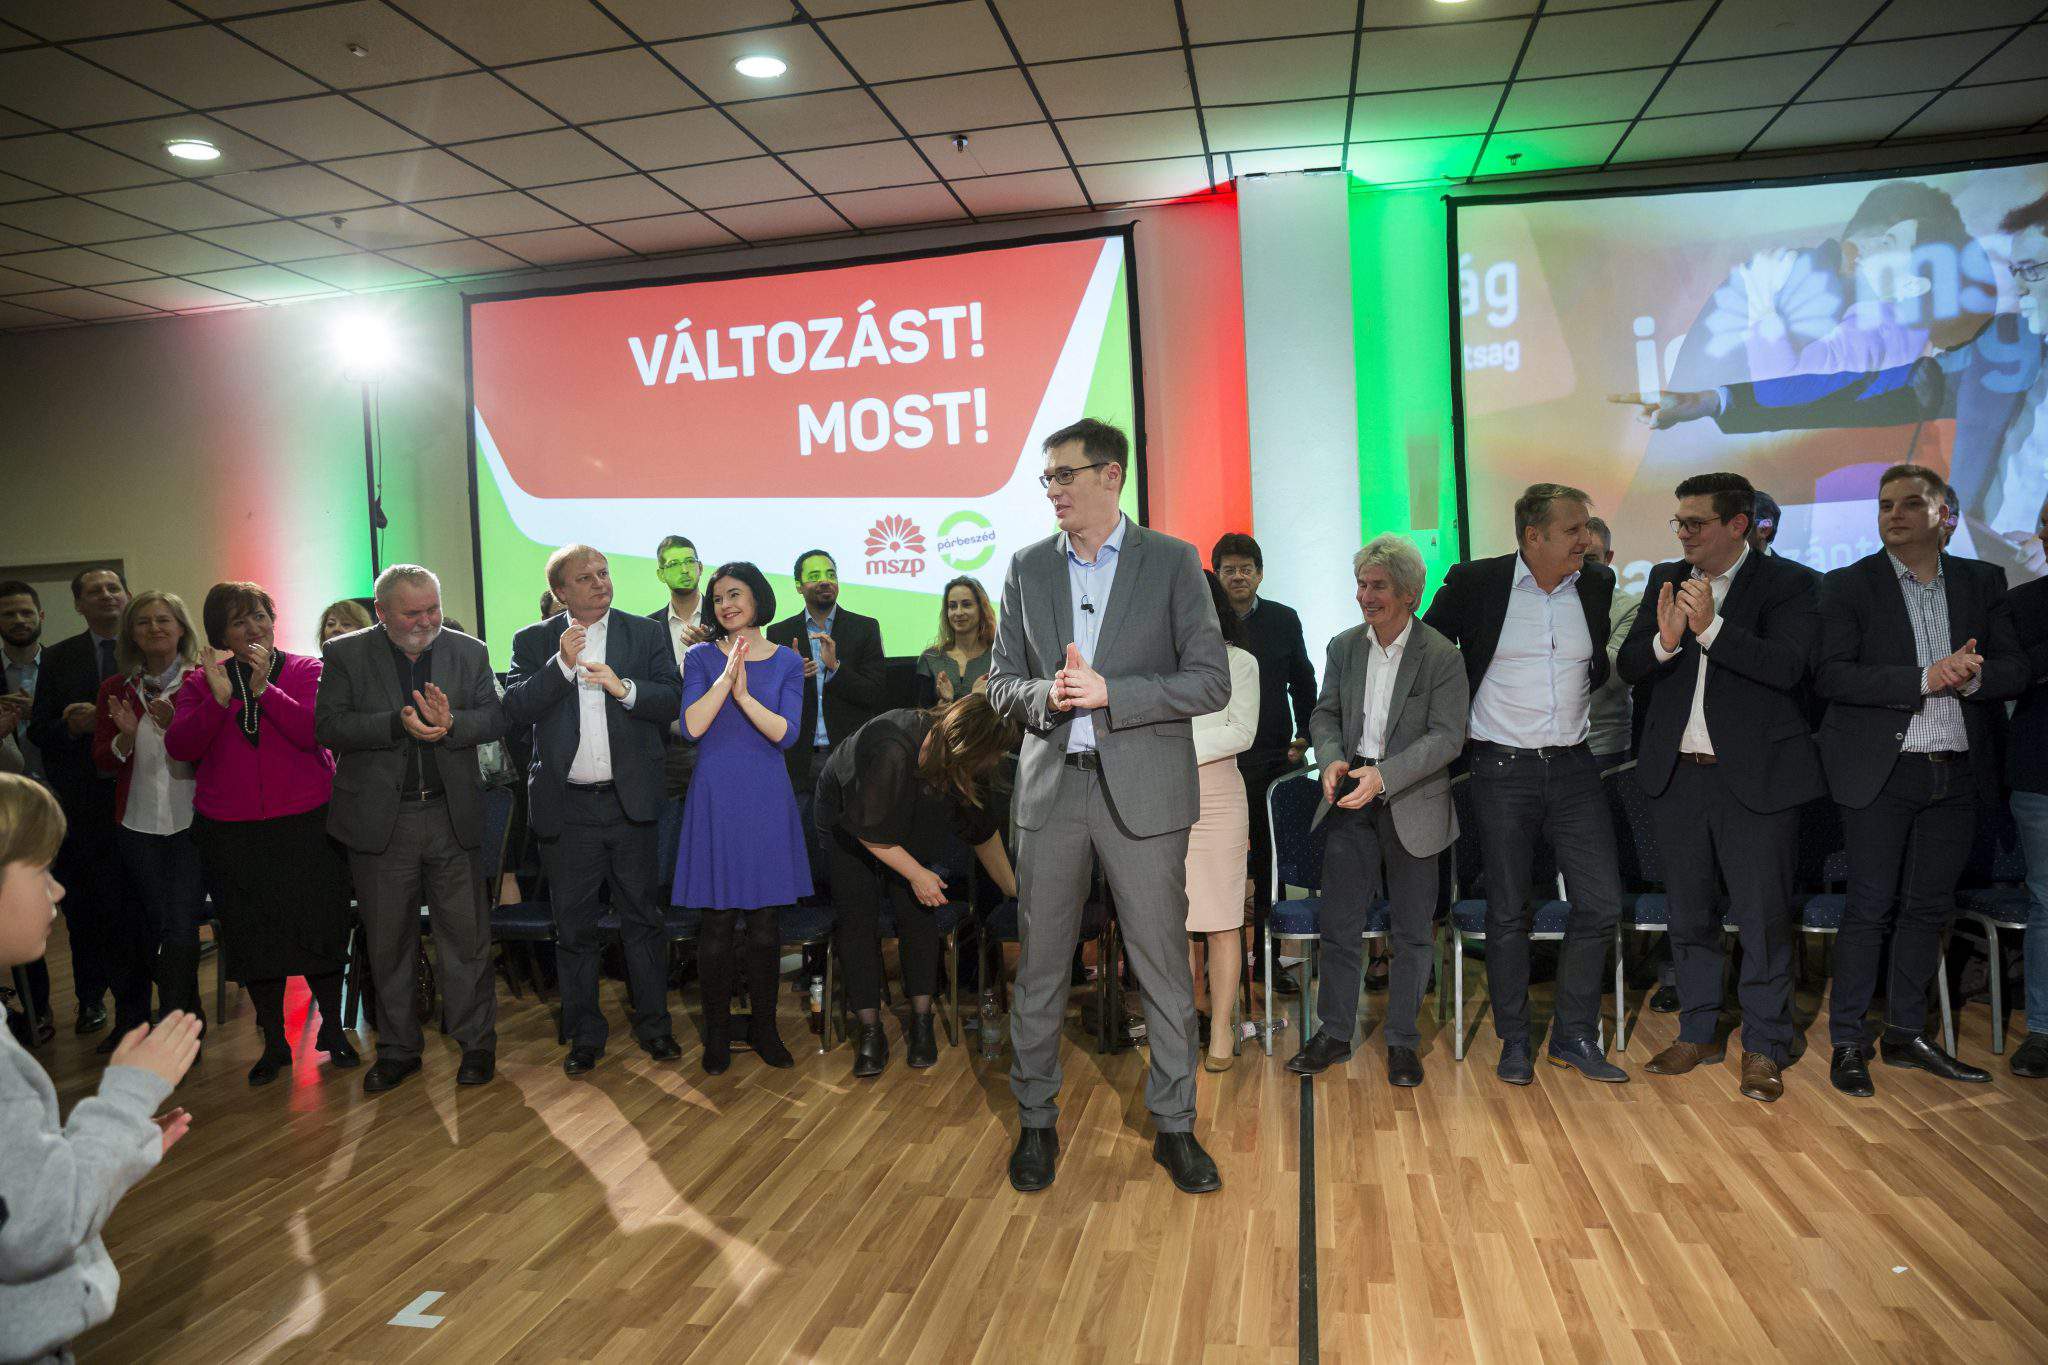 مرشح رئيس الوزراء المجر اليساري كاراكسوني